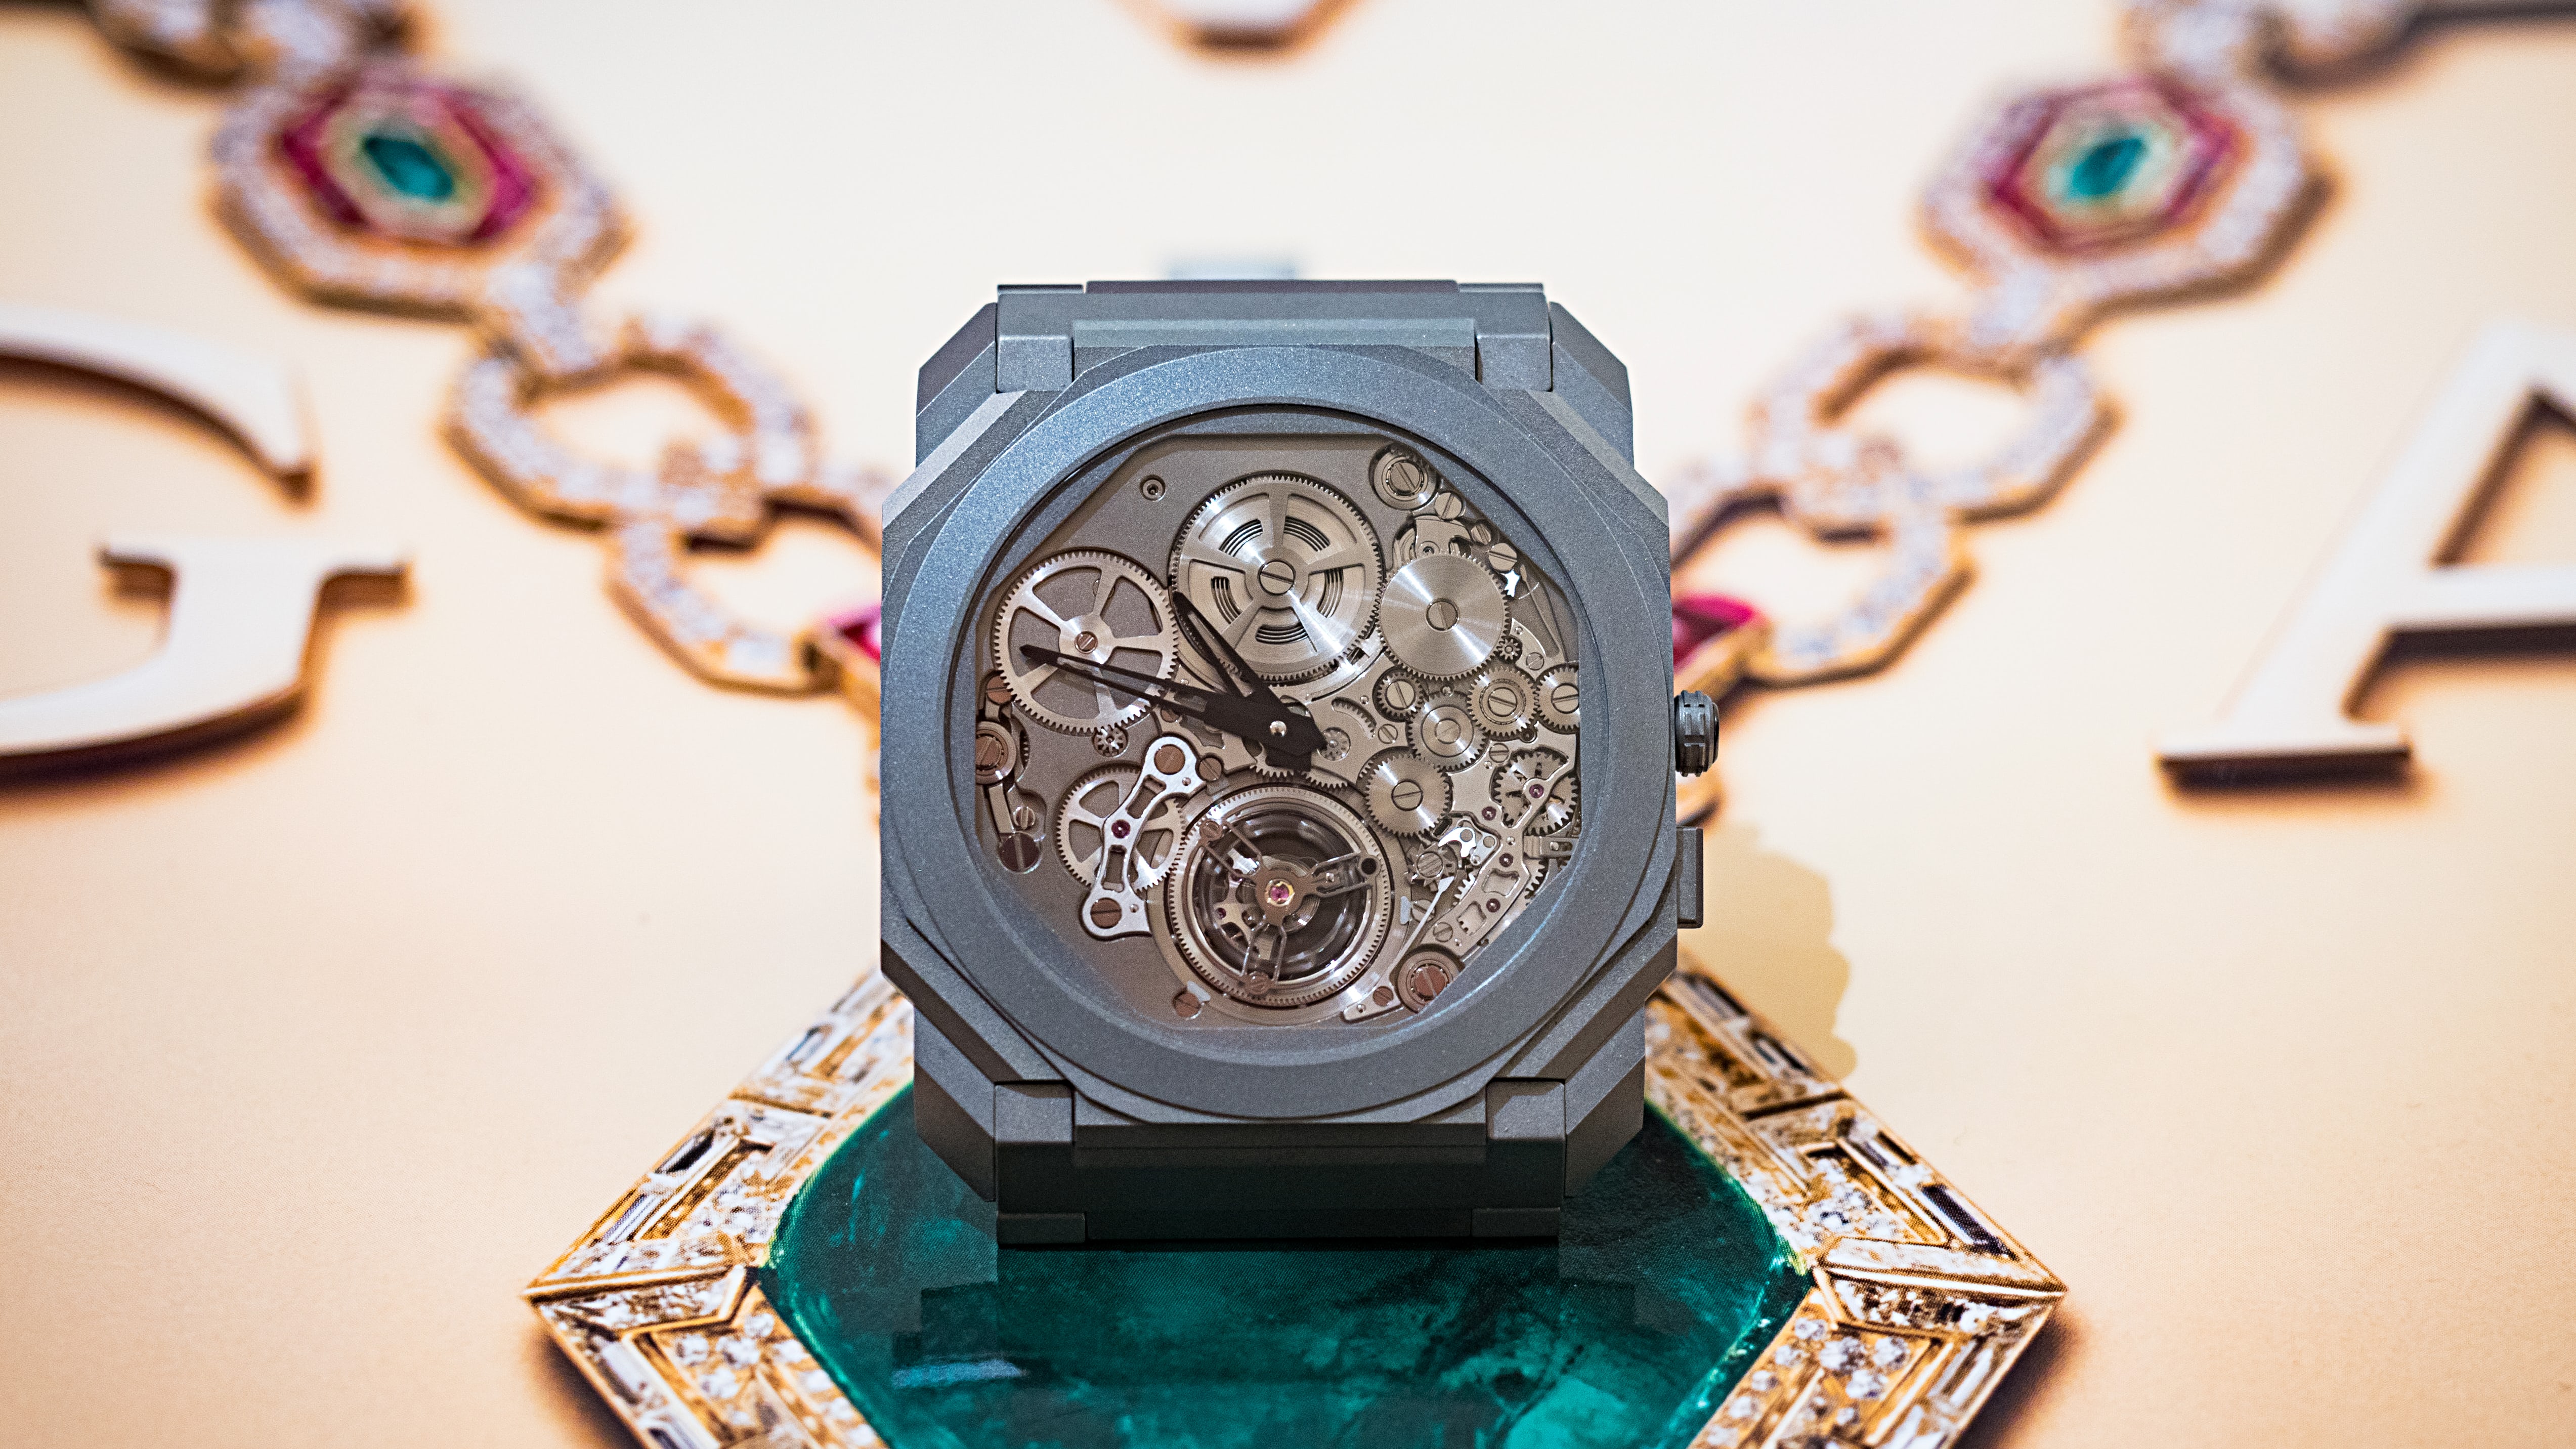 Điểm danh những mẫu đồng hồ có thiết kế đột phá và ấn tượng nhất